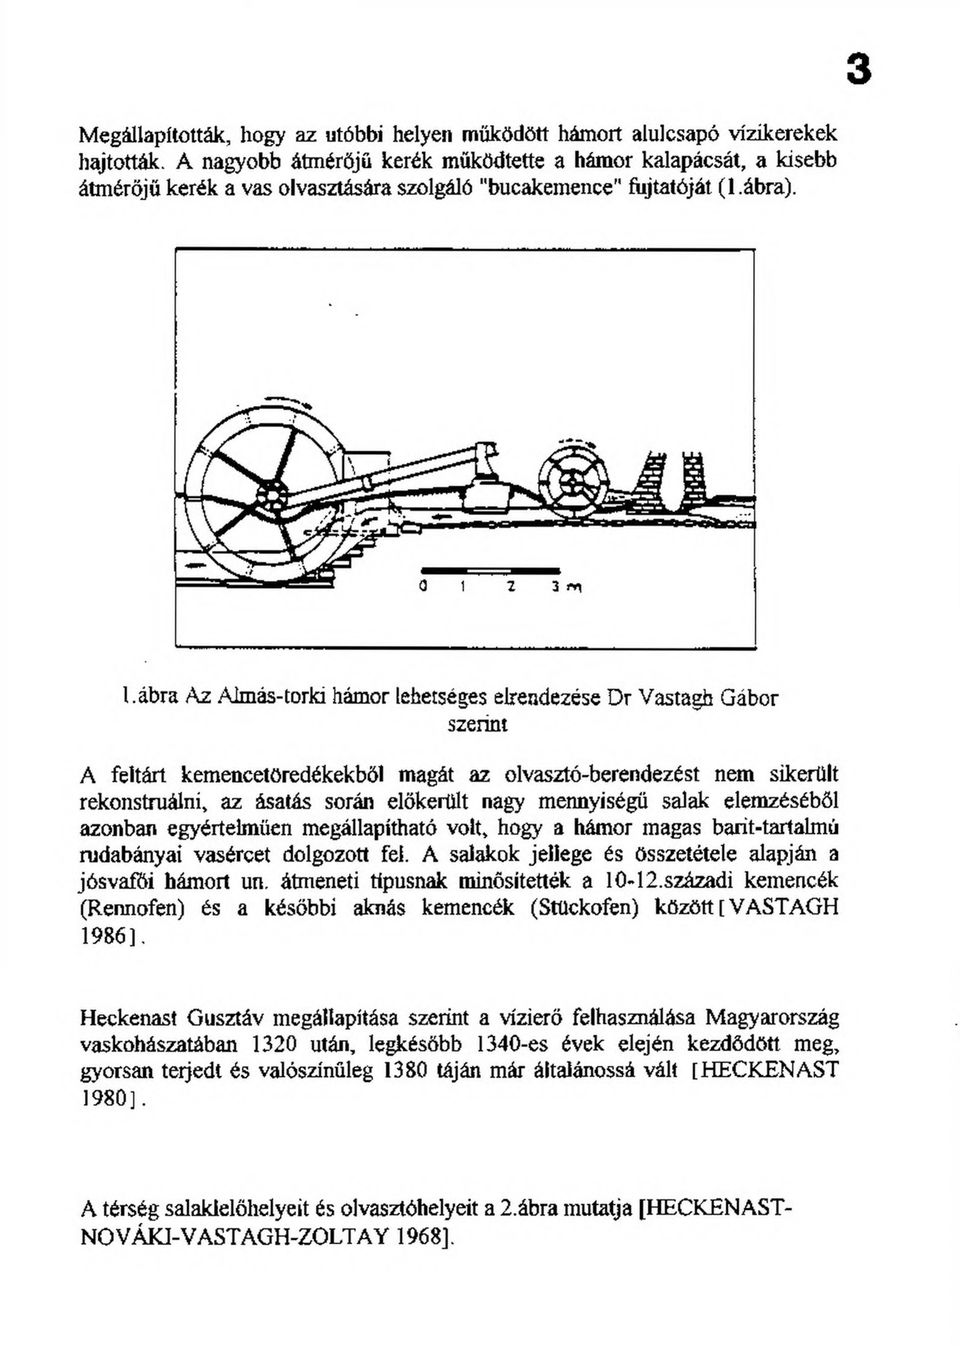 Lábra Az Almás-torki hámor lehetséges elrendezése Dr Vastagfa Gábor szerint A feltárt kemencetöredékekből magát az olvasztó-berendezést nem sikerült rekonstruálni, az ásatás során előkerült nagy